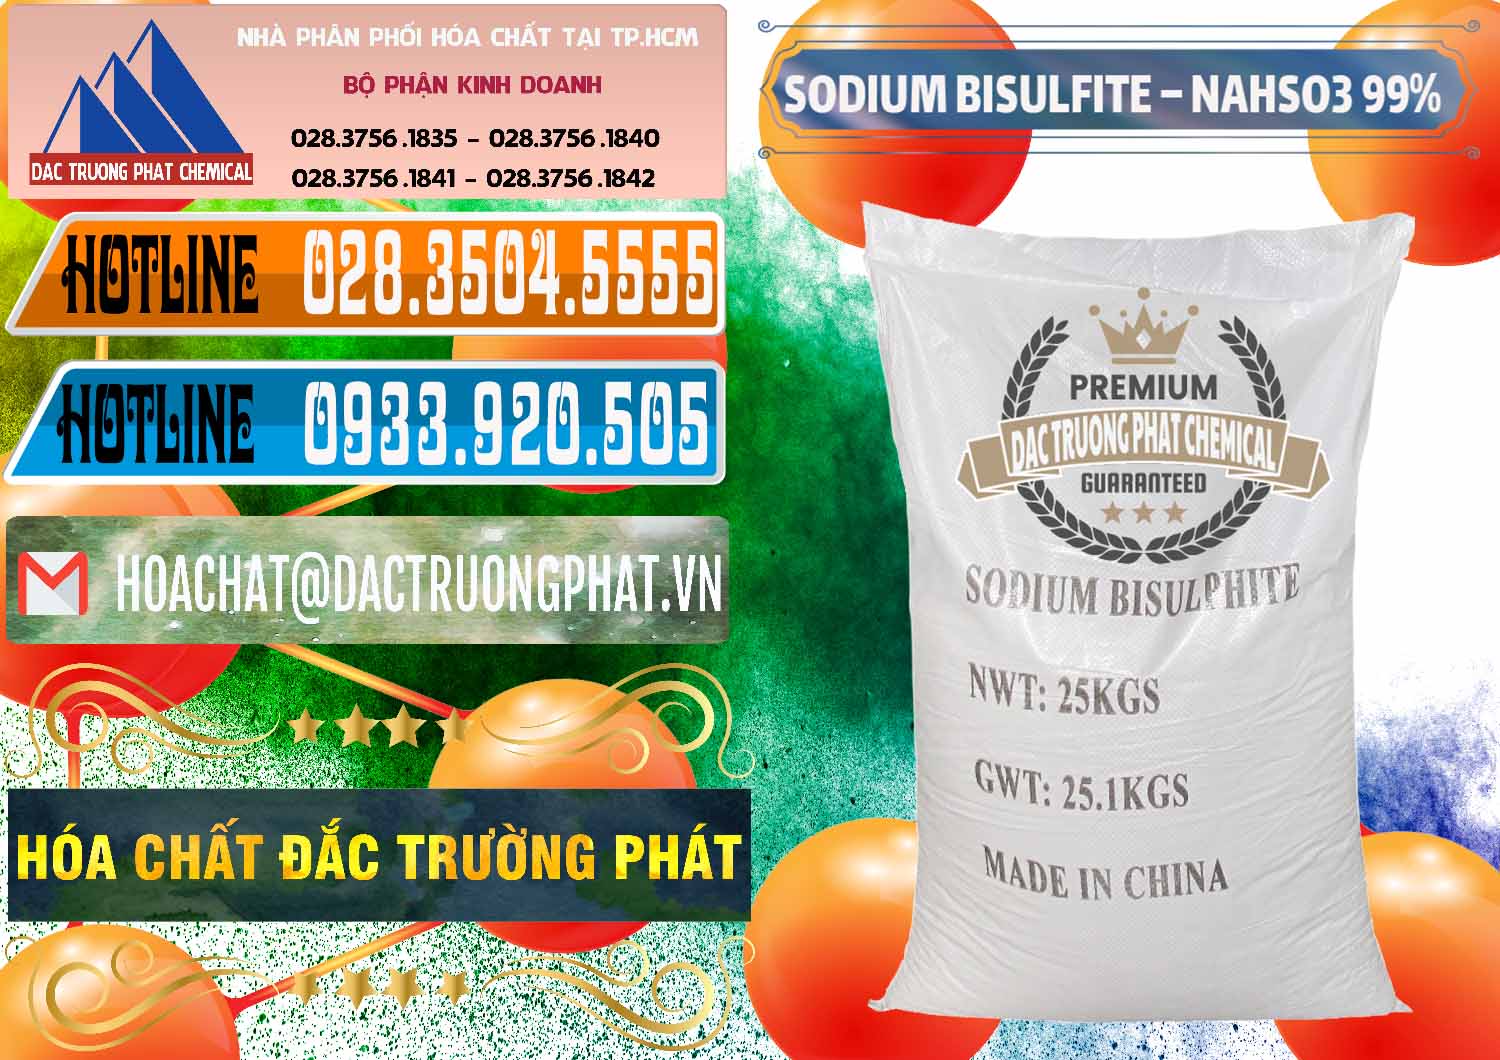 Cty kinh doanh & bán Sodium Bisulfite – NAHSO3 Trung Quốc China - 0140 - Cty chuyên bán ( cung cấp ) hóa chất tại TP.HCM - stmp.net